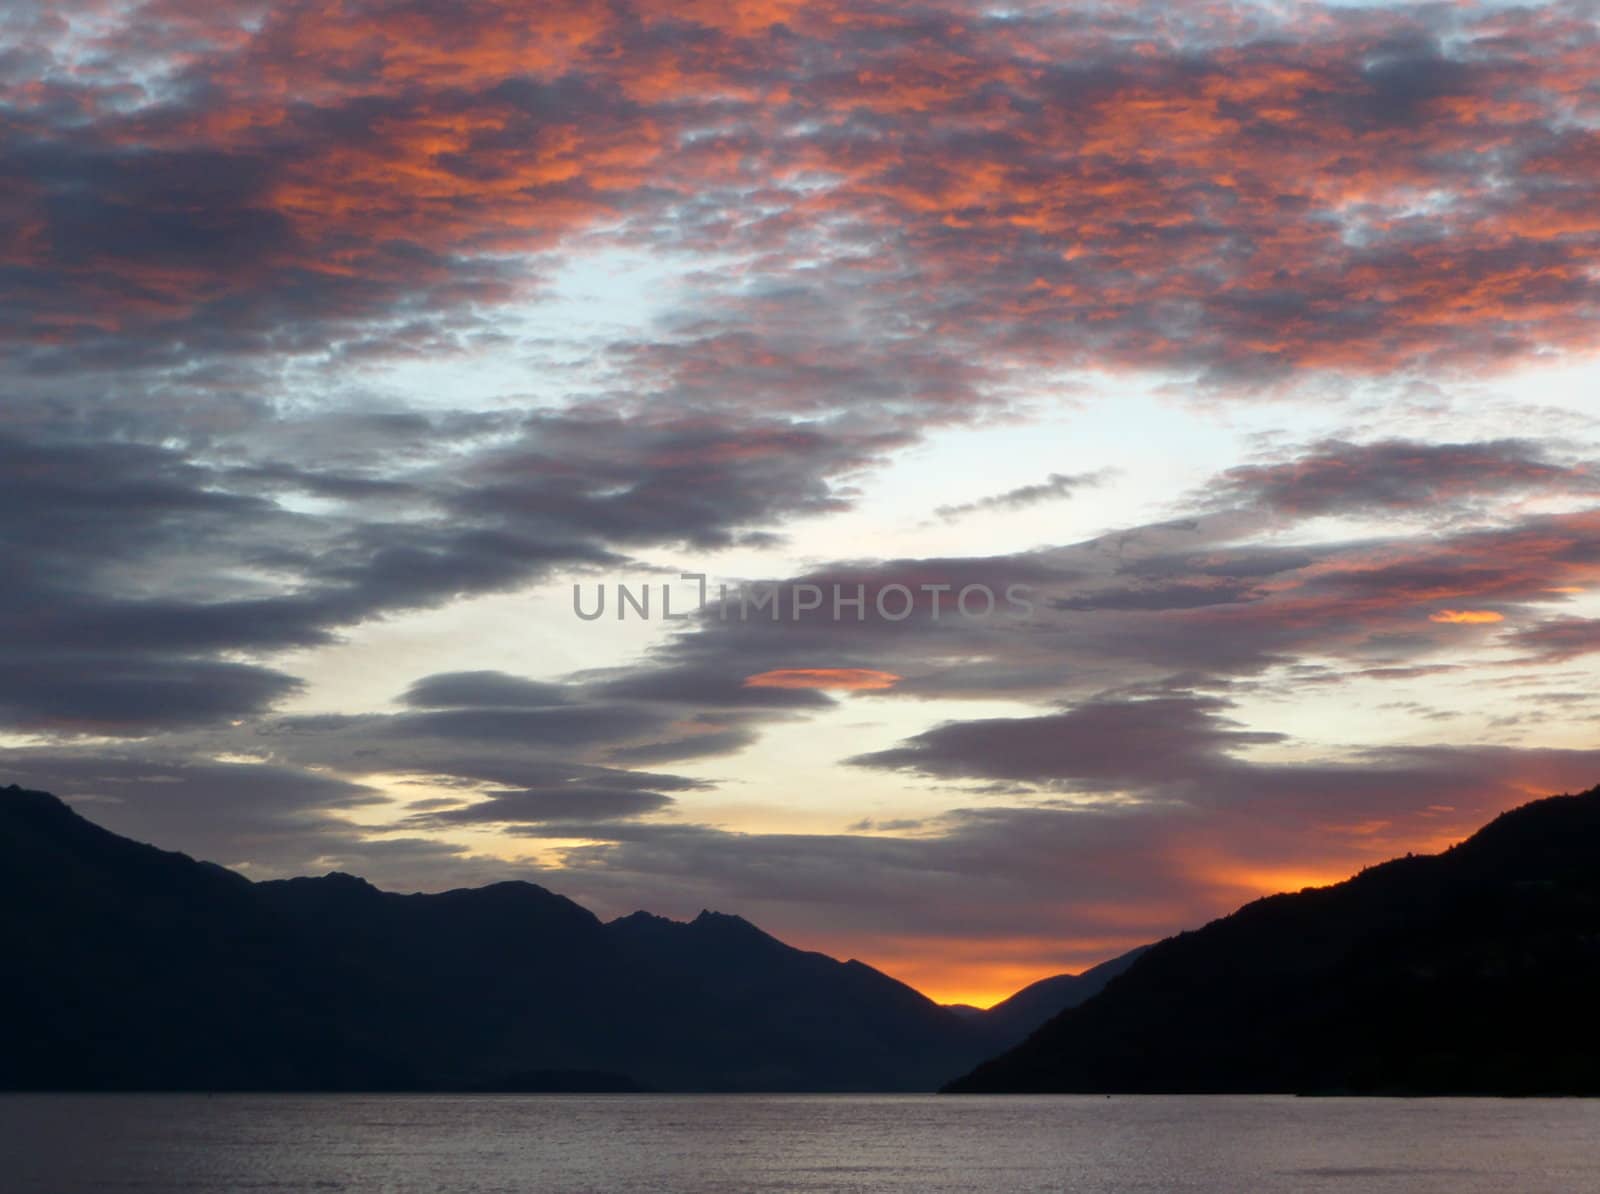 Sunset at Lake Wakatipu in New Zealand